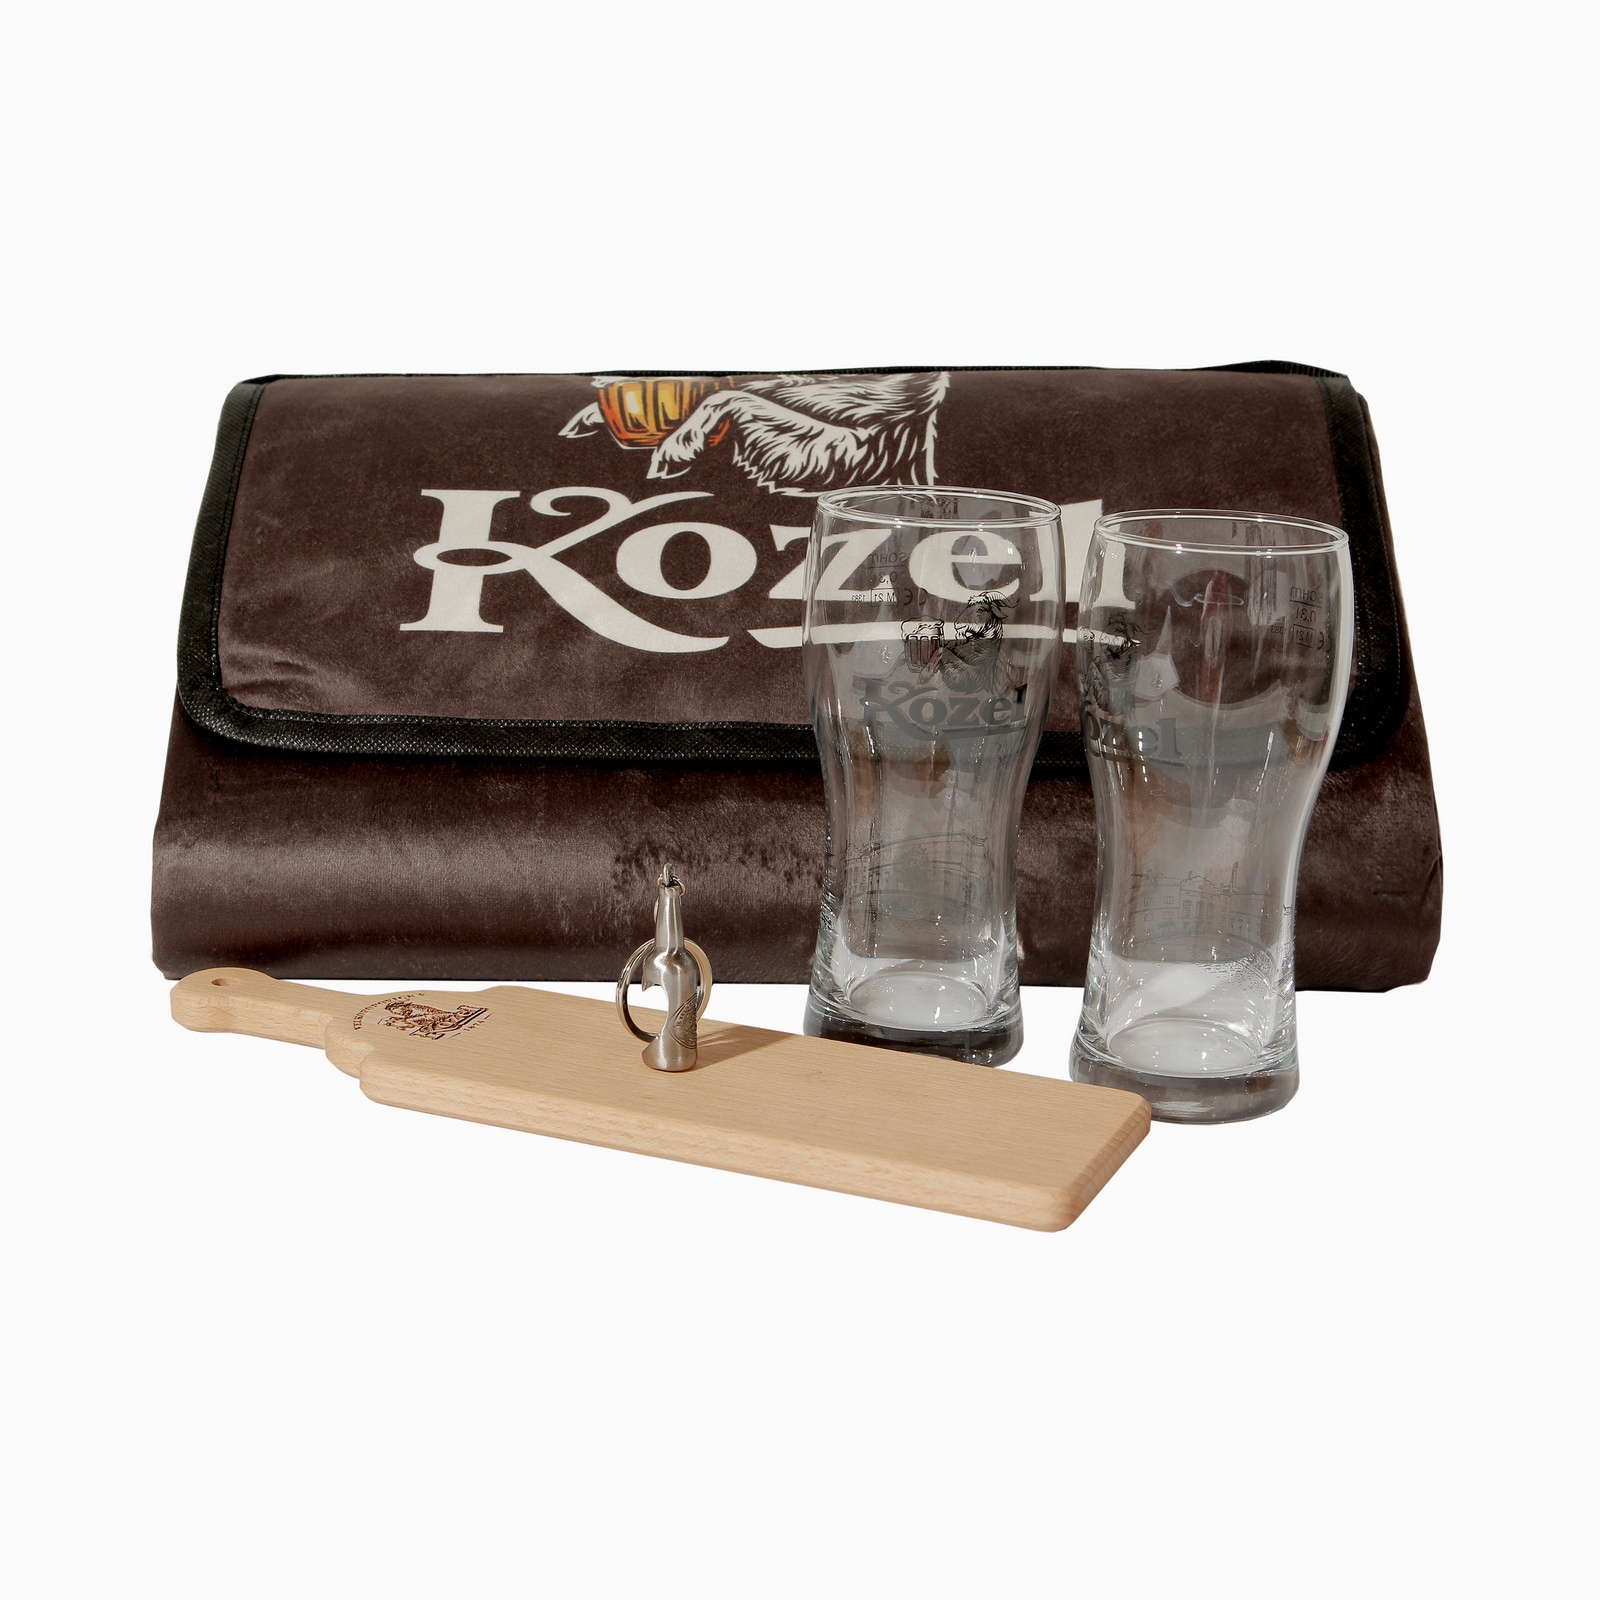 Kozel Picknick Paket